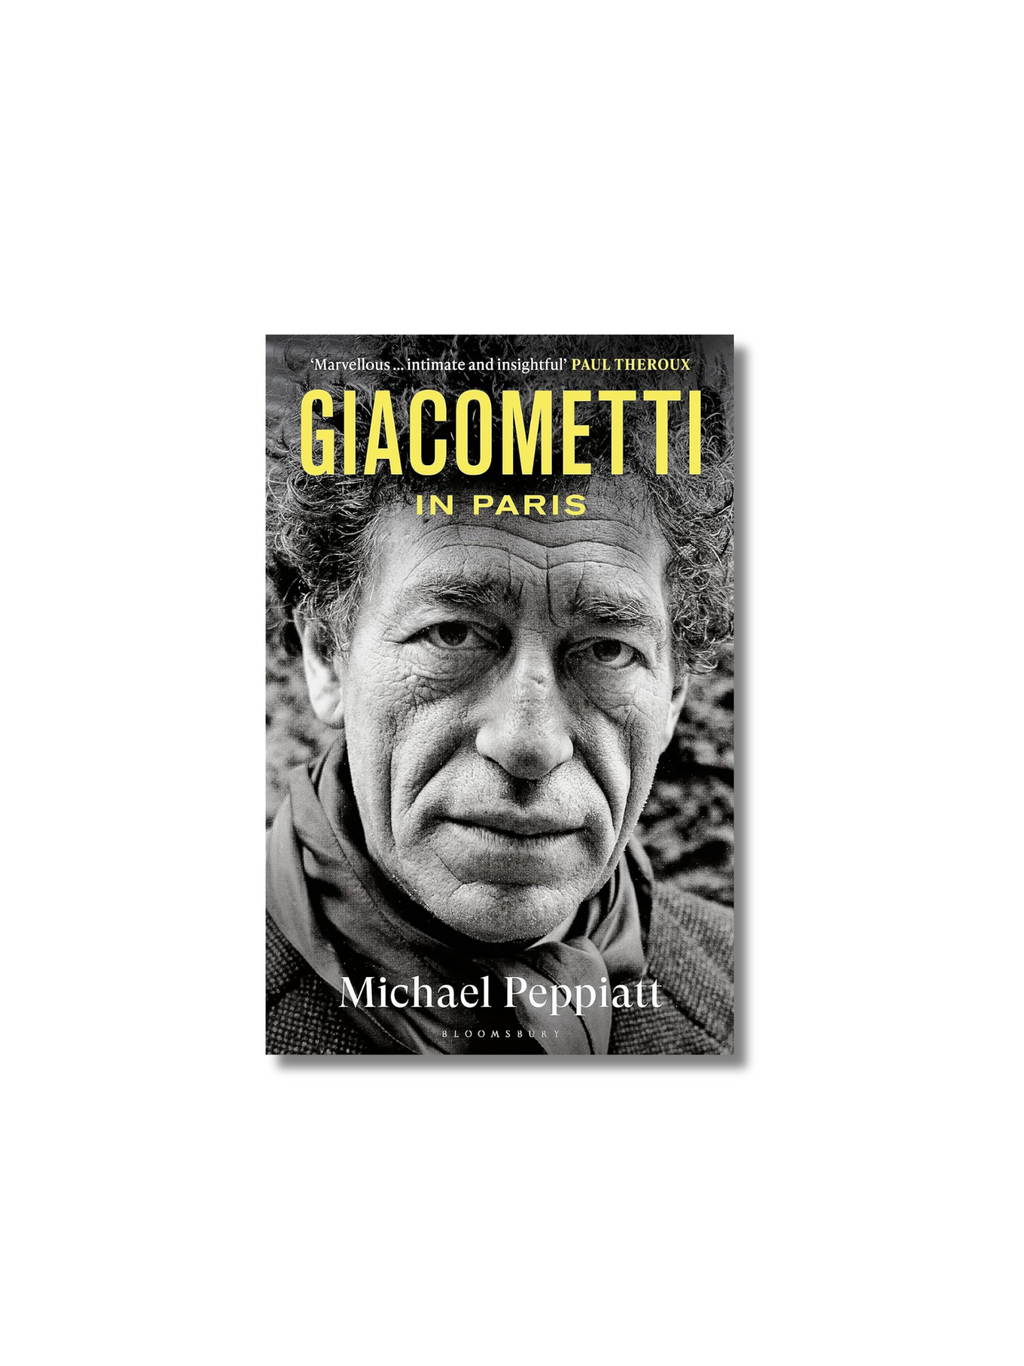 Giacometti in Paris: A Life